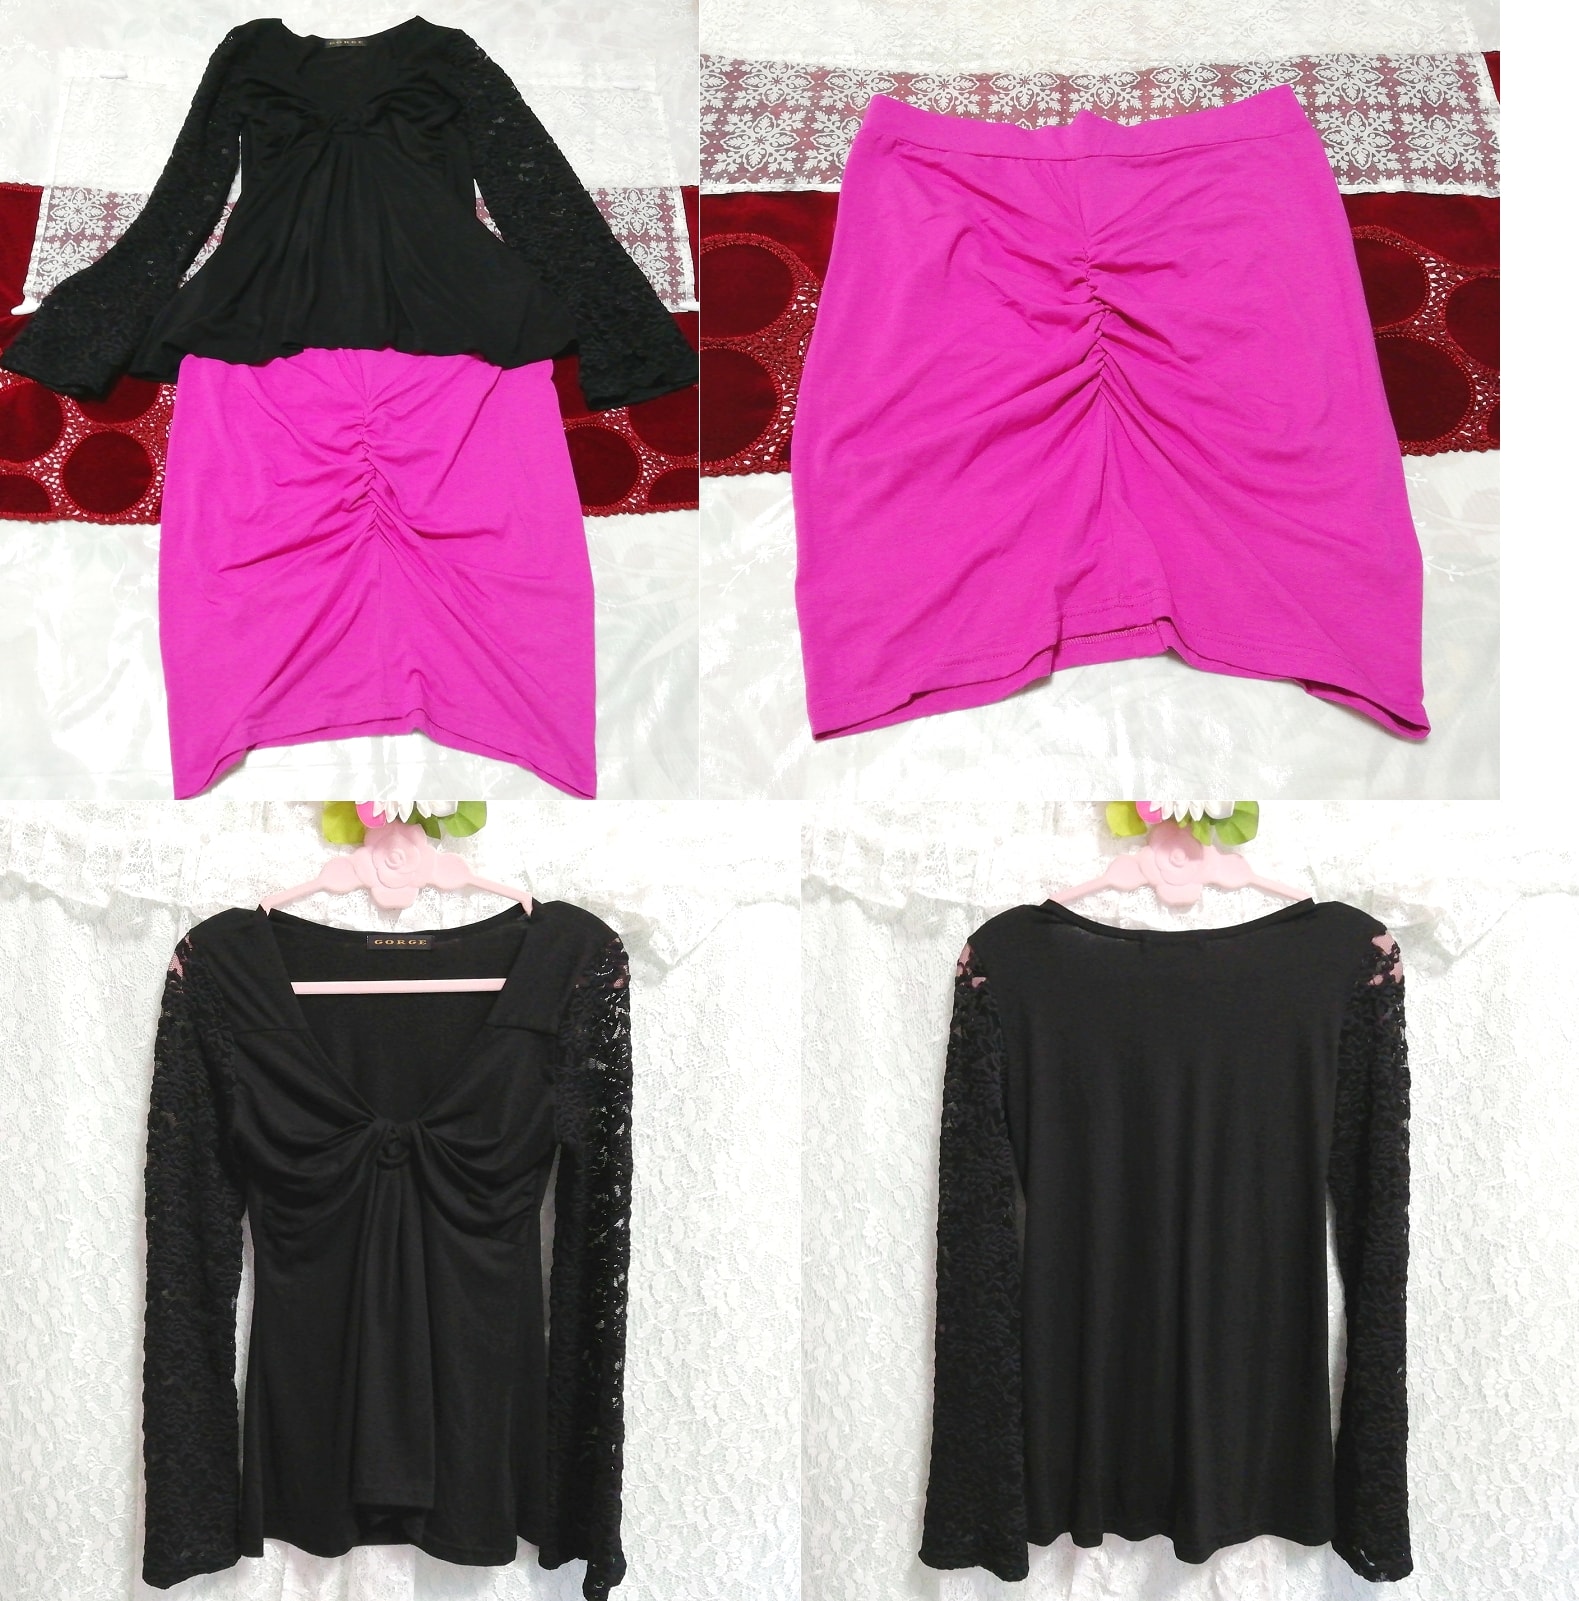 Schwarze Spitzen-Tunika aus Chiffon mit langen Ärmeln, Negligé-Nachthemd, magentafarbener Minirock, 2 Stück, Mode, Frauenmode, Nachtwäsche, Pyjama